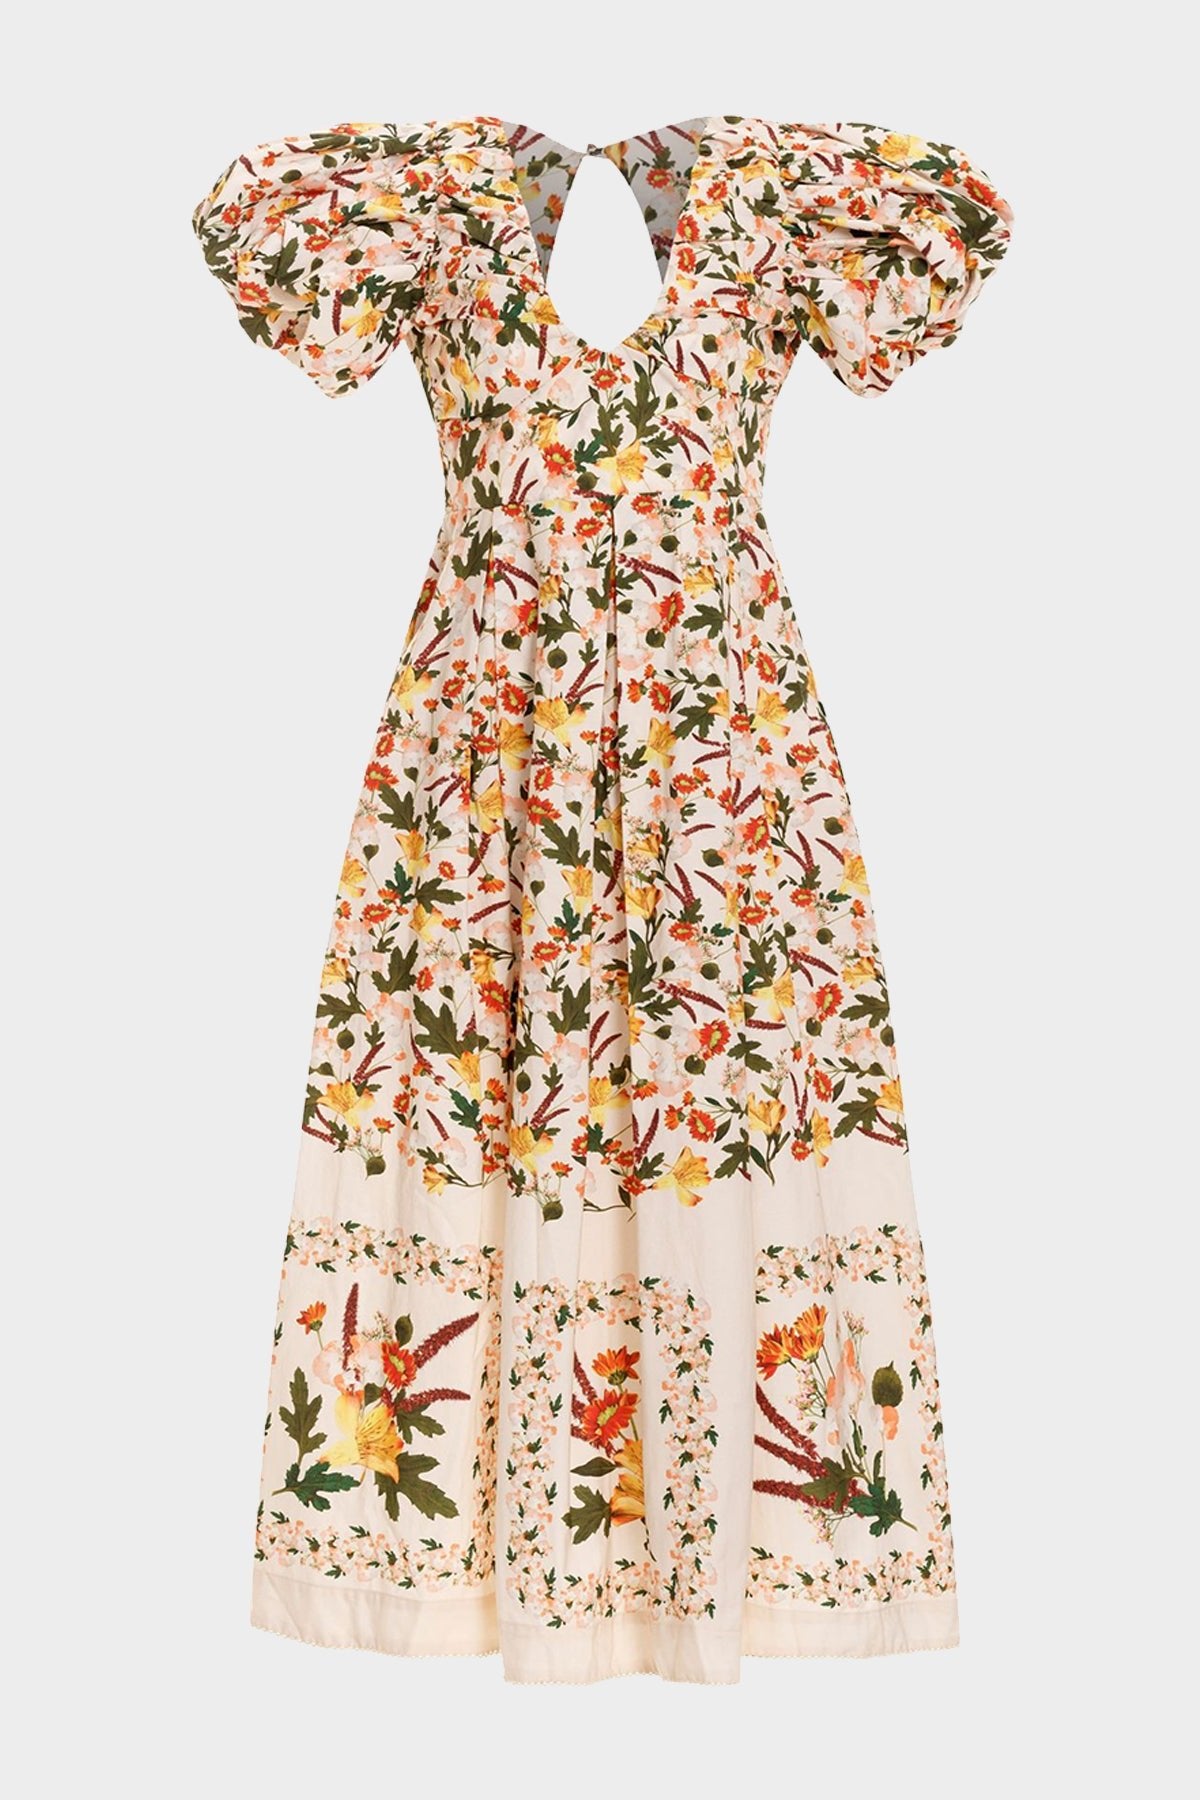 Chontaduro Clementina Cotton Midi Dress in Multicolor - shop-olivia.com